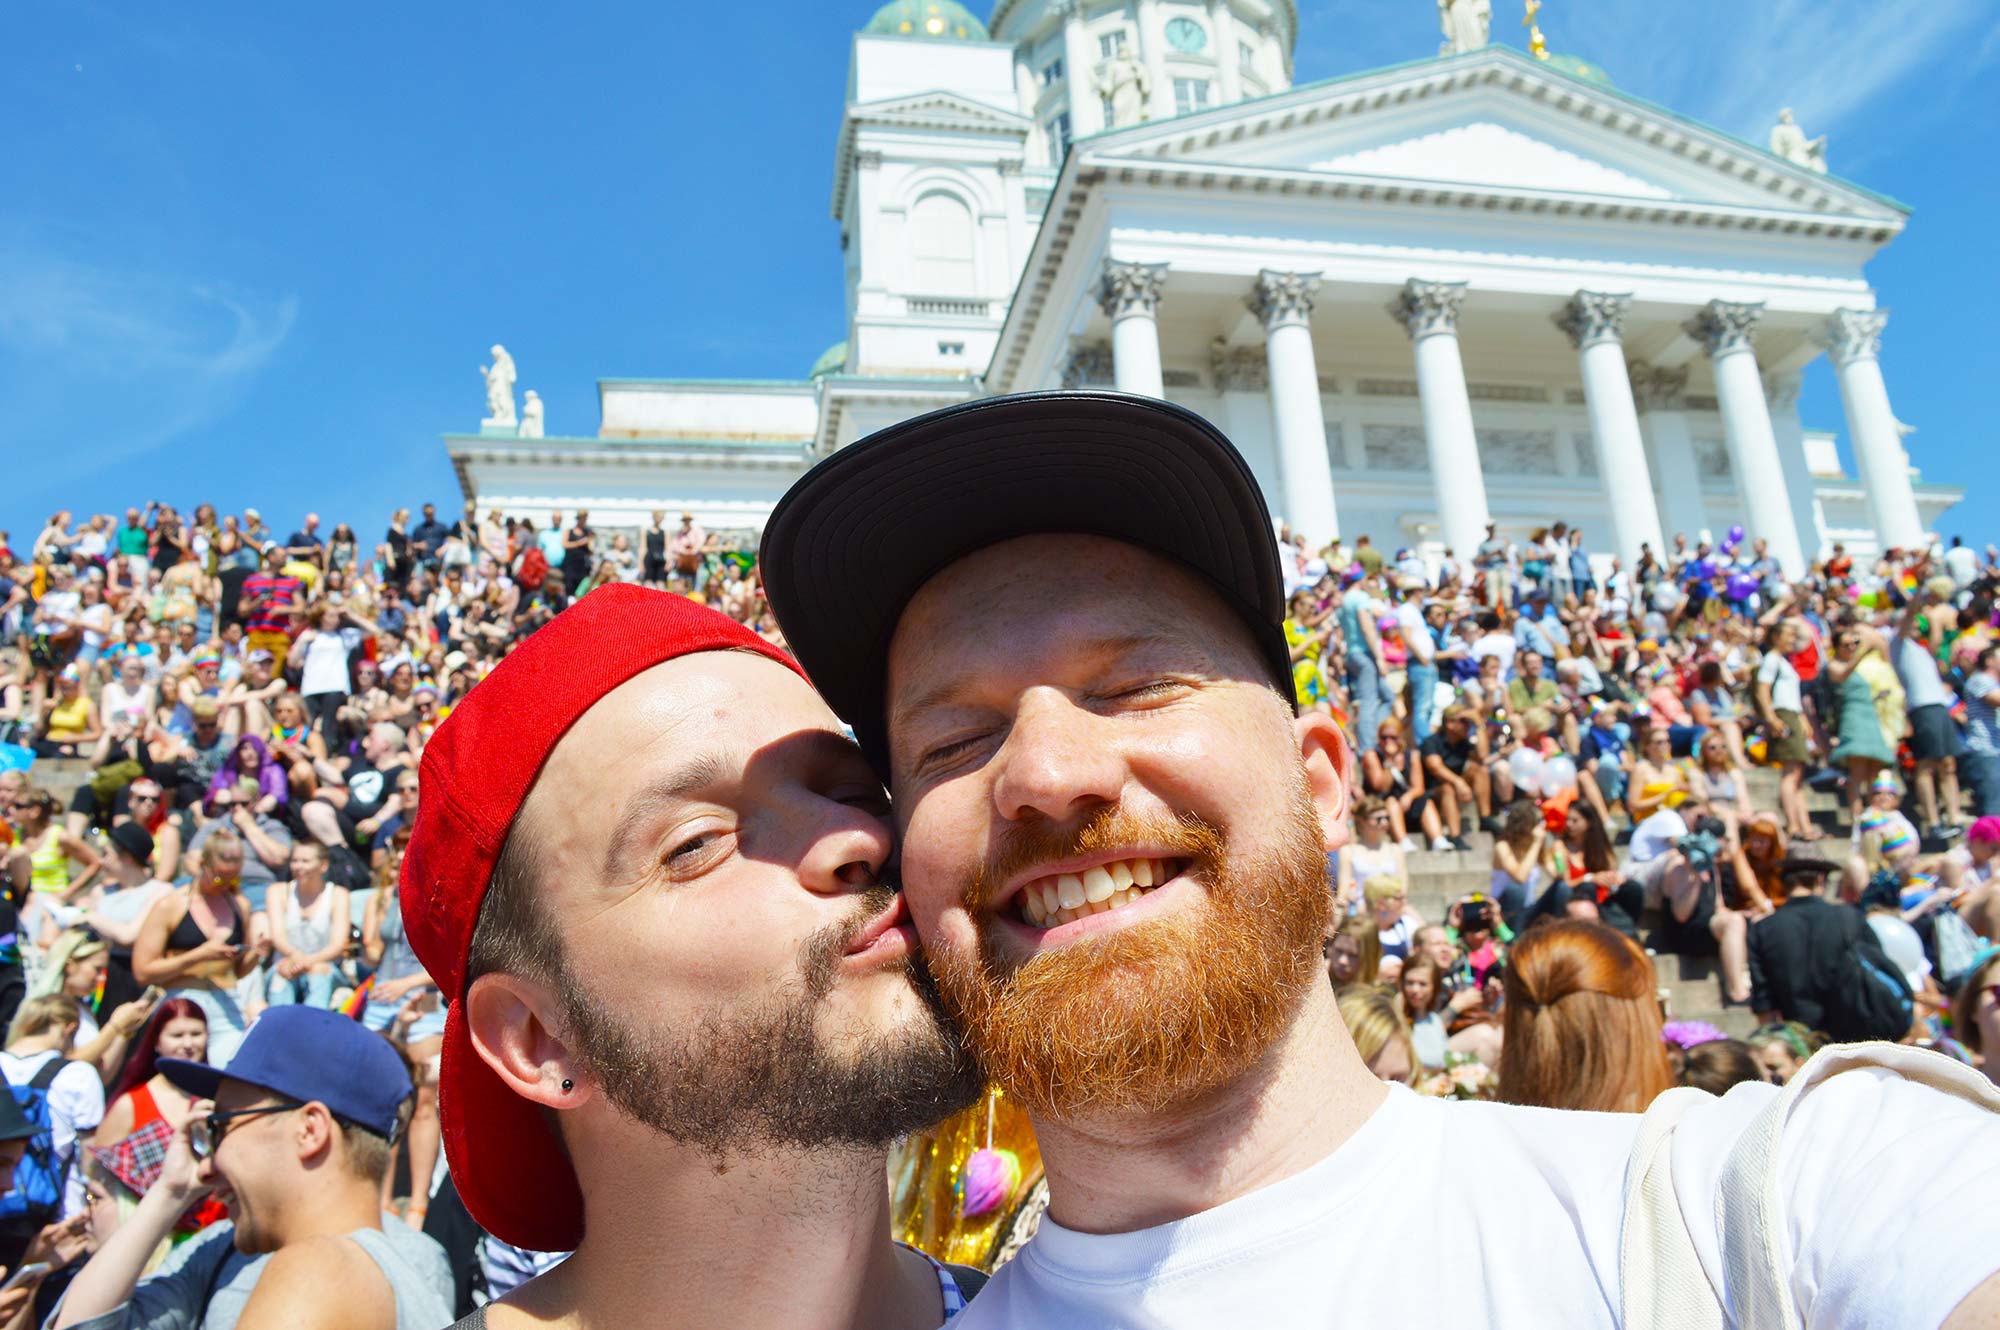 Helsinki Pride – Photos & Videos of the Finnish LGBTQ+ Festival Parade